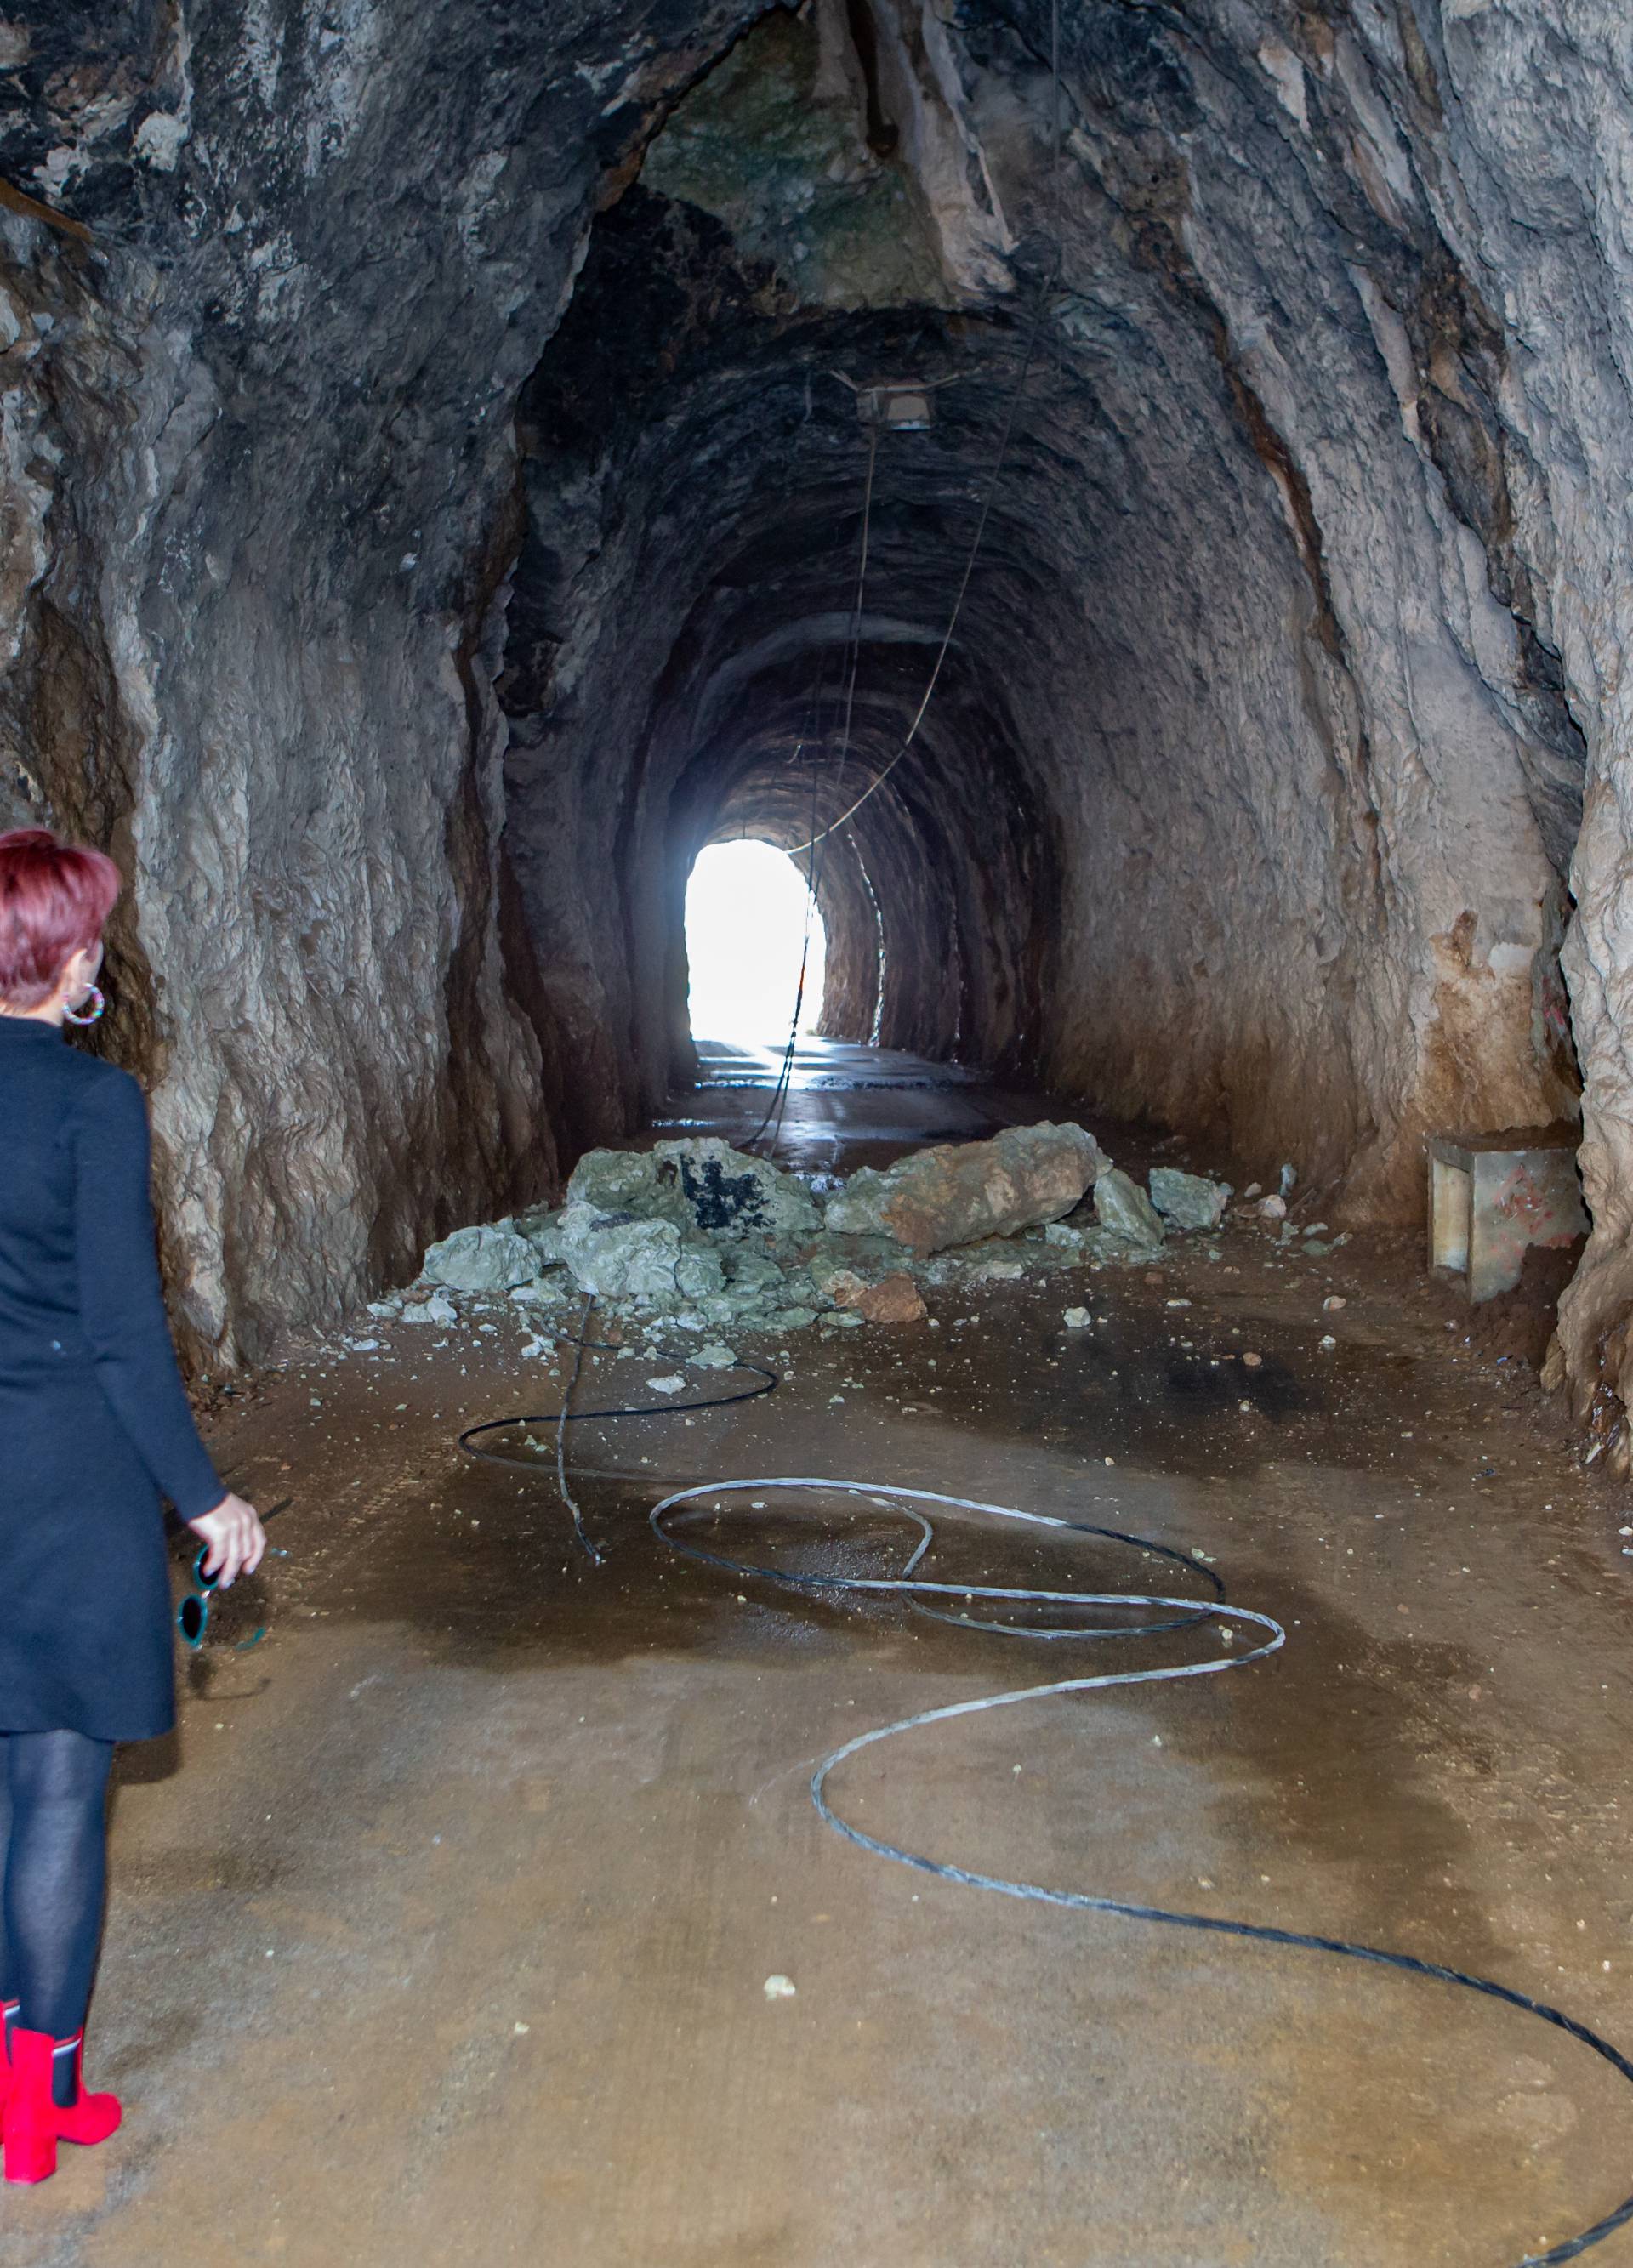 Umalo tragedija: Djeca prošla pa se u tunelu odronila stijena